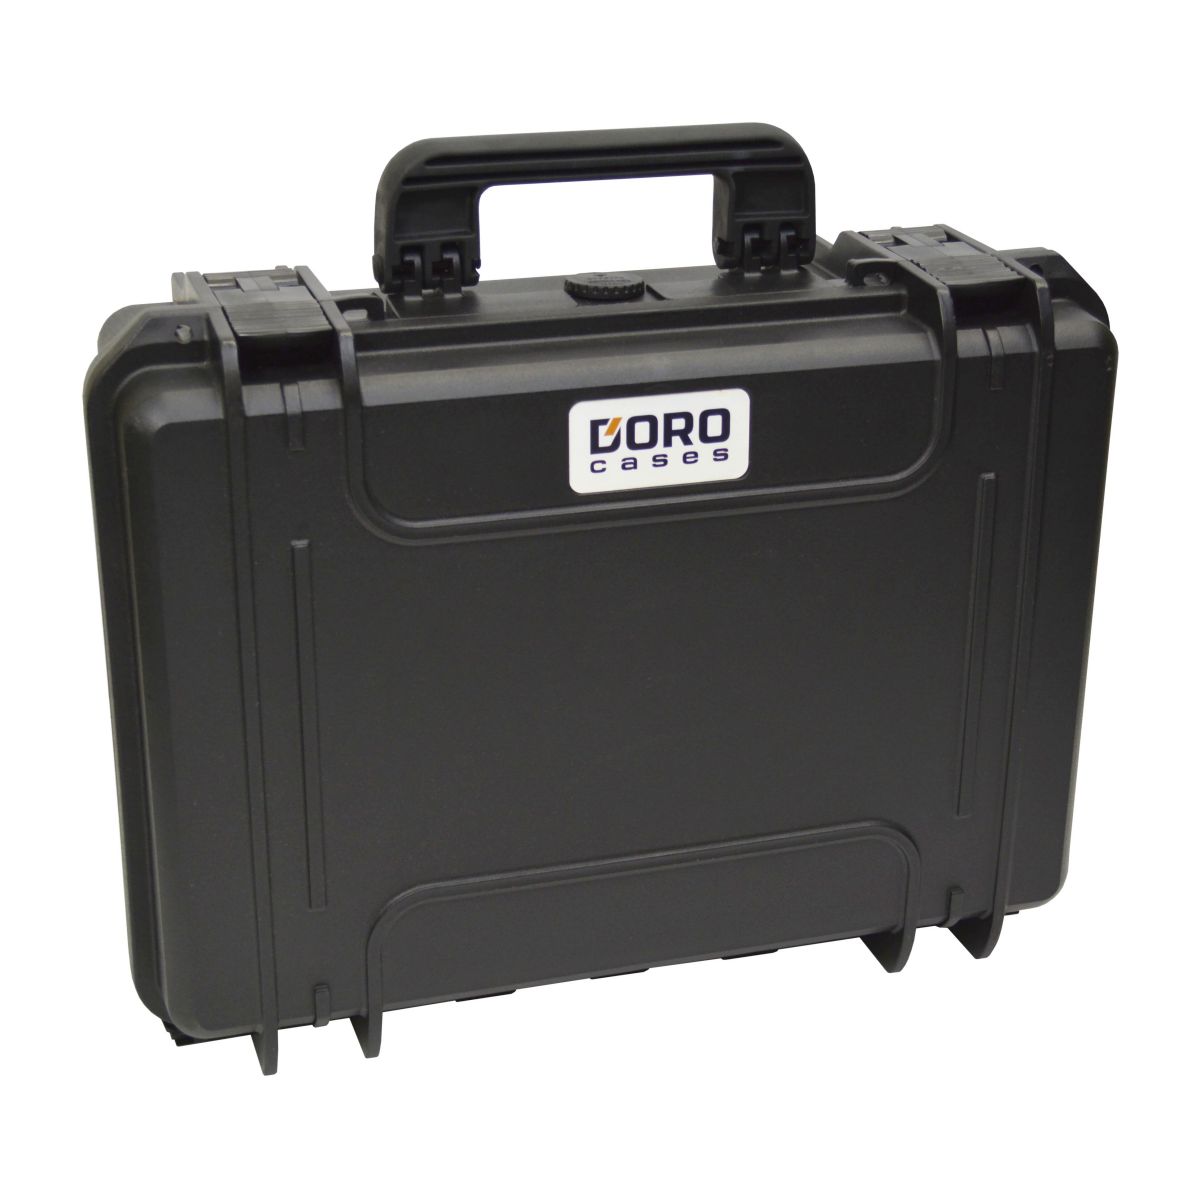 36 x 2.5" SATA / PATA / IDE Hard Drive Storage Case - DORO D1611-6